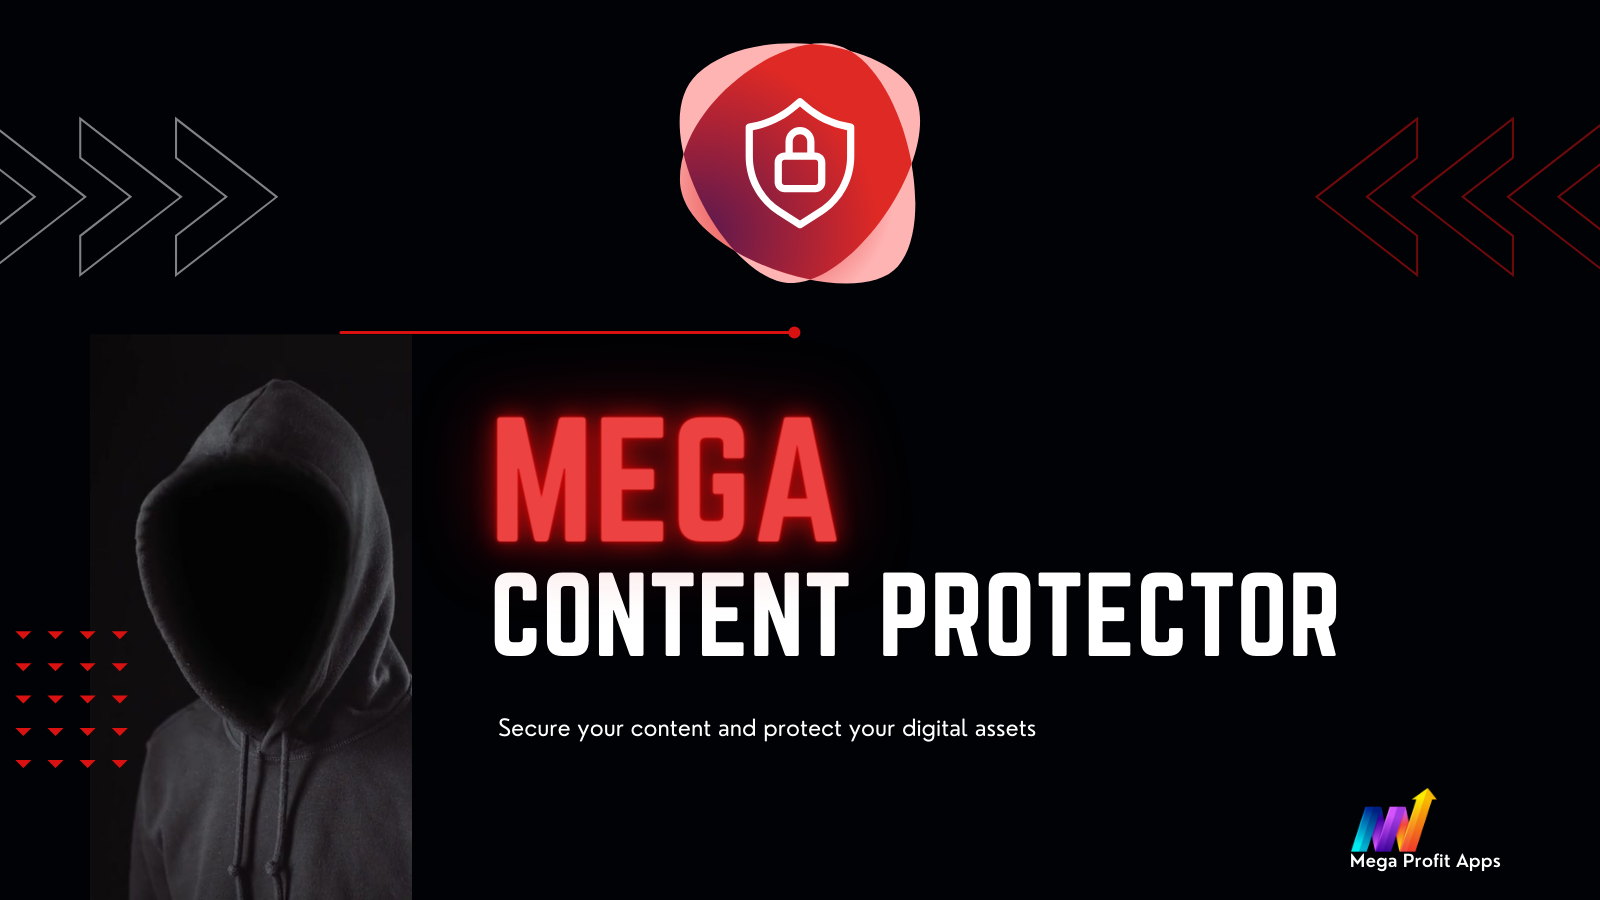 Mega Content Protector - Bescherm uw harde werk en creativiteit